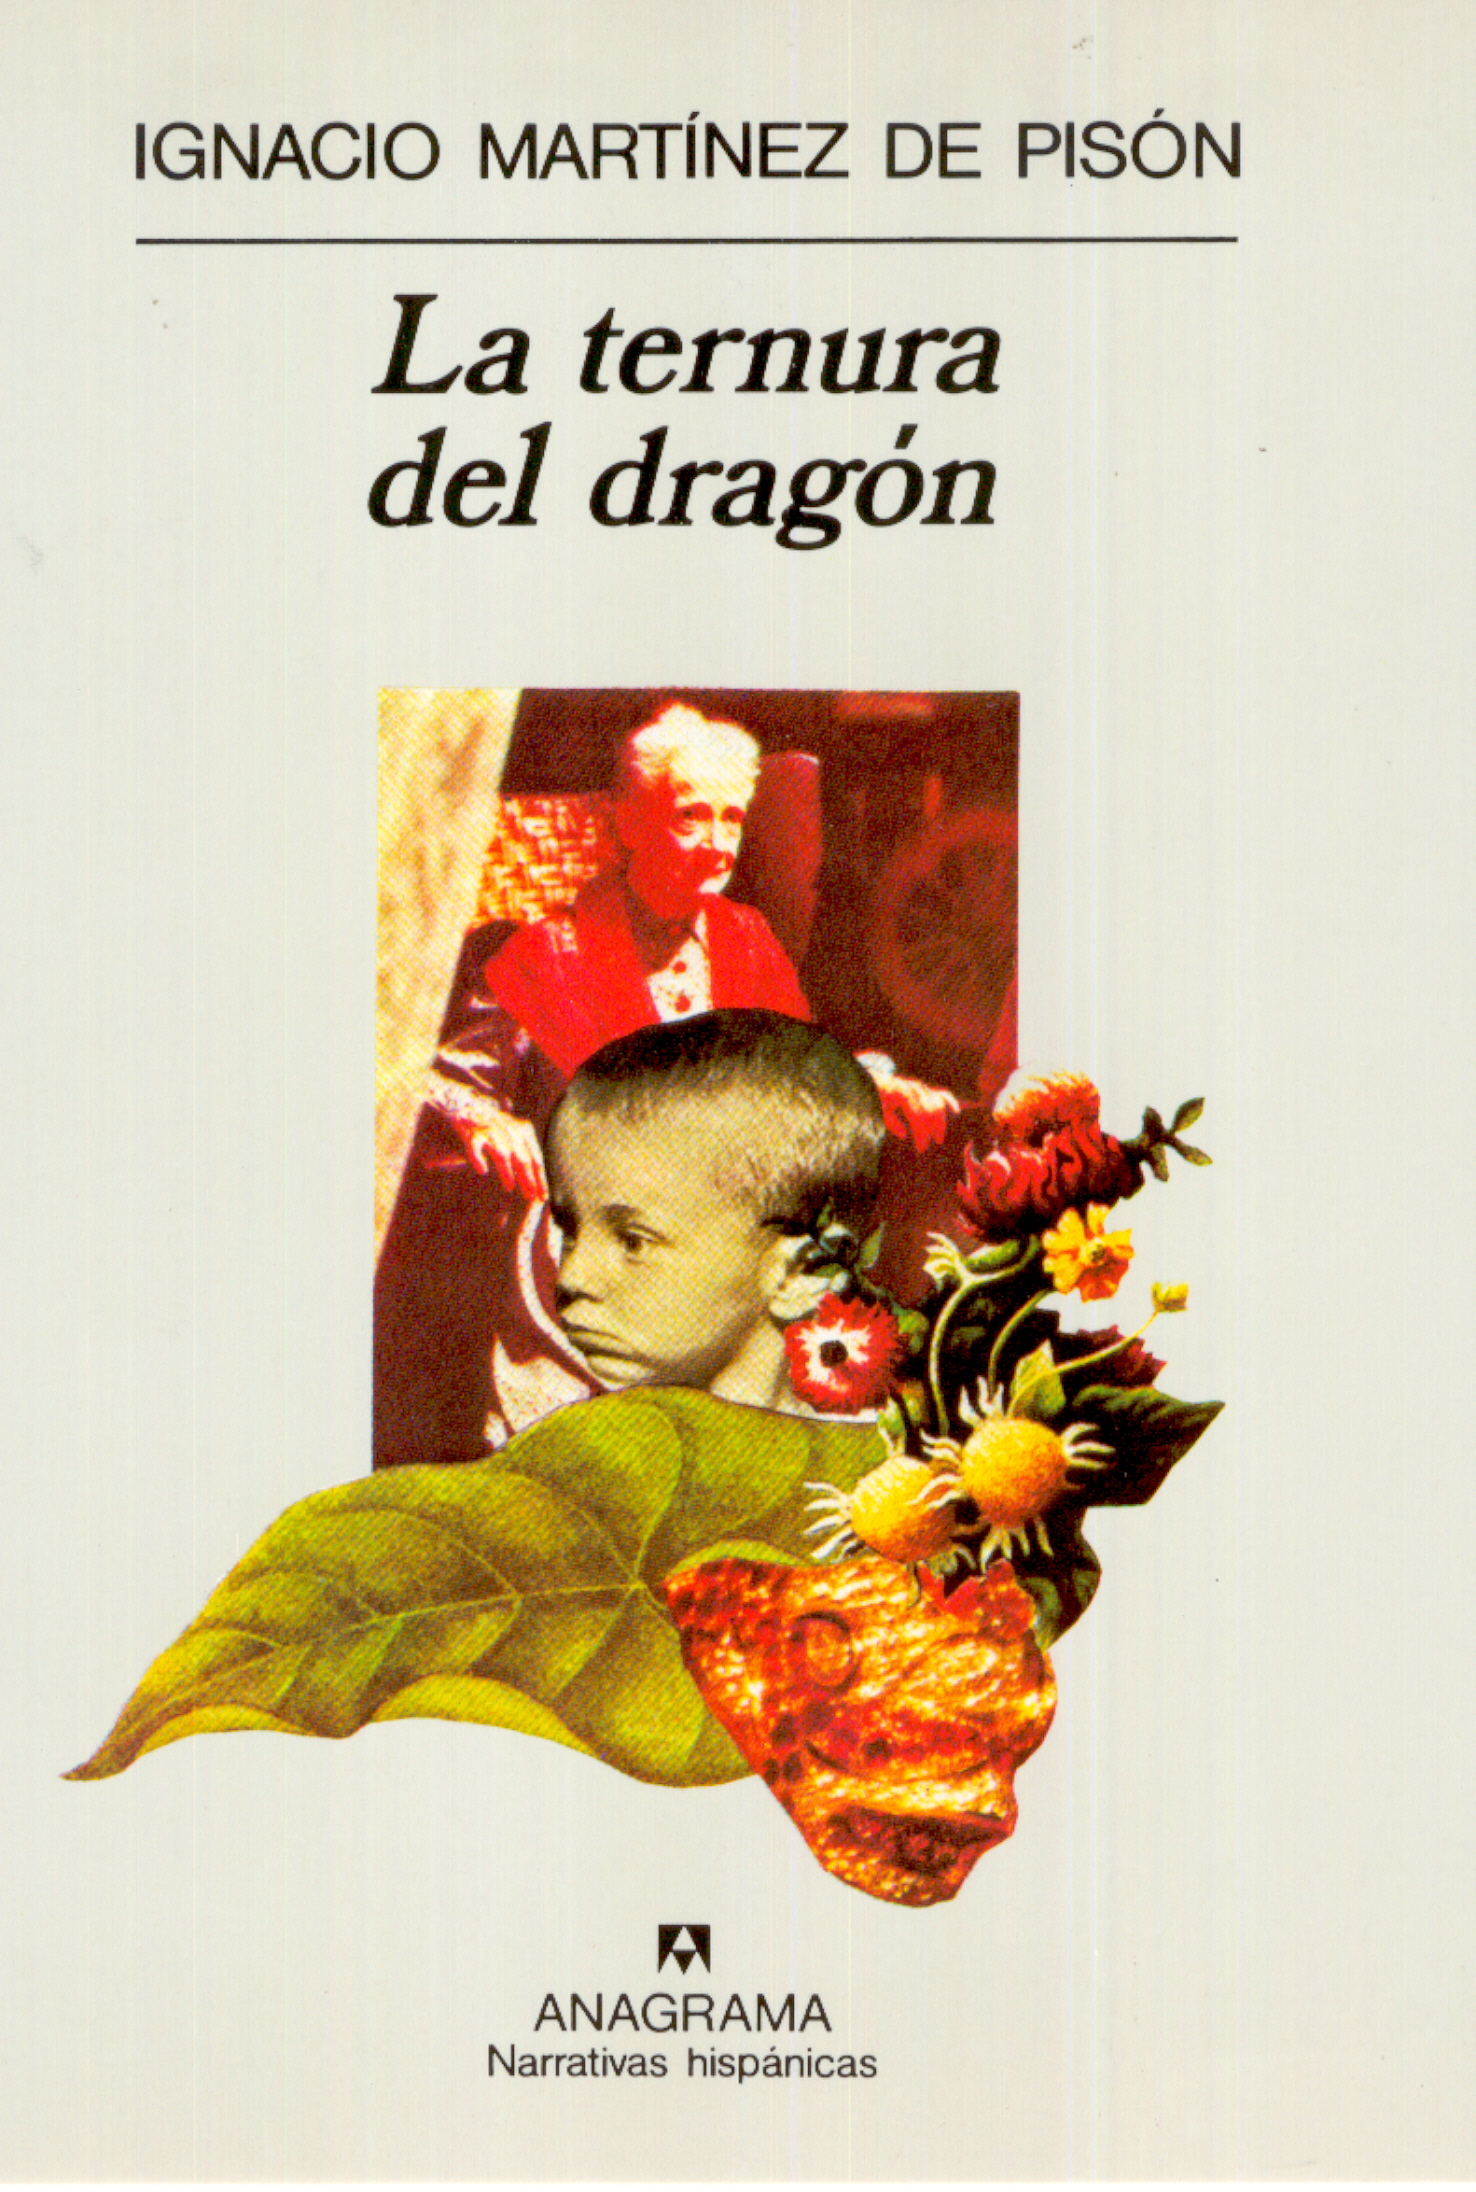 La ternura del dragón - Martínez de Pisón, Ignacio - 978-84-339-1726-3 -  Editorial Anagrama